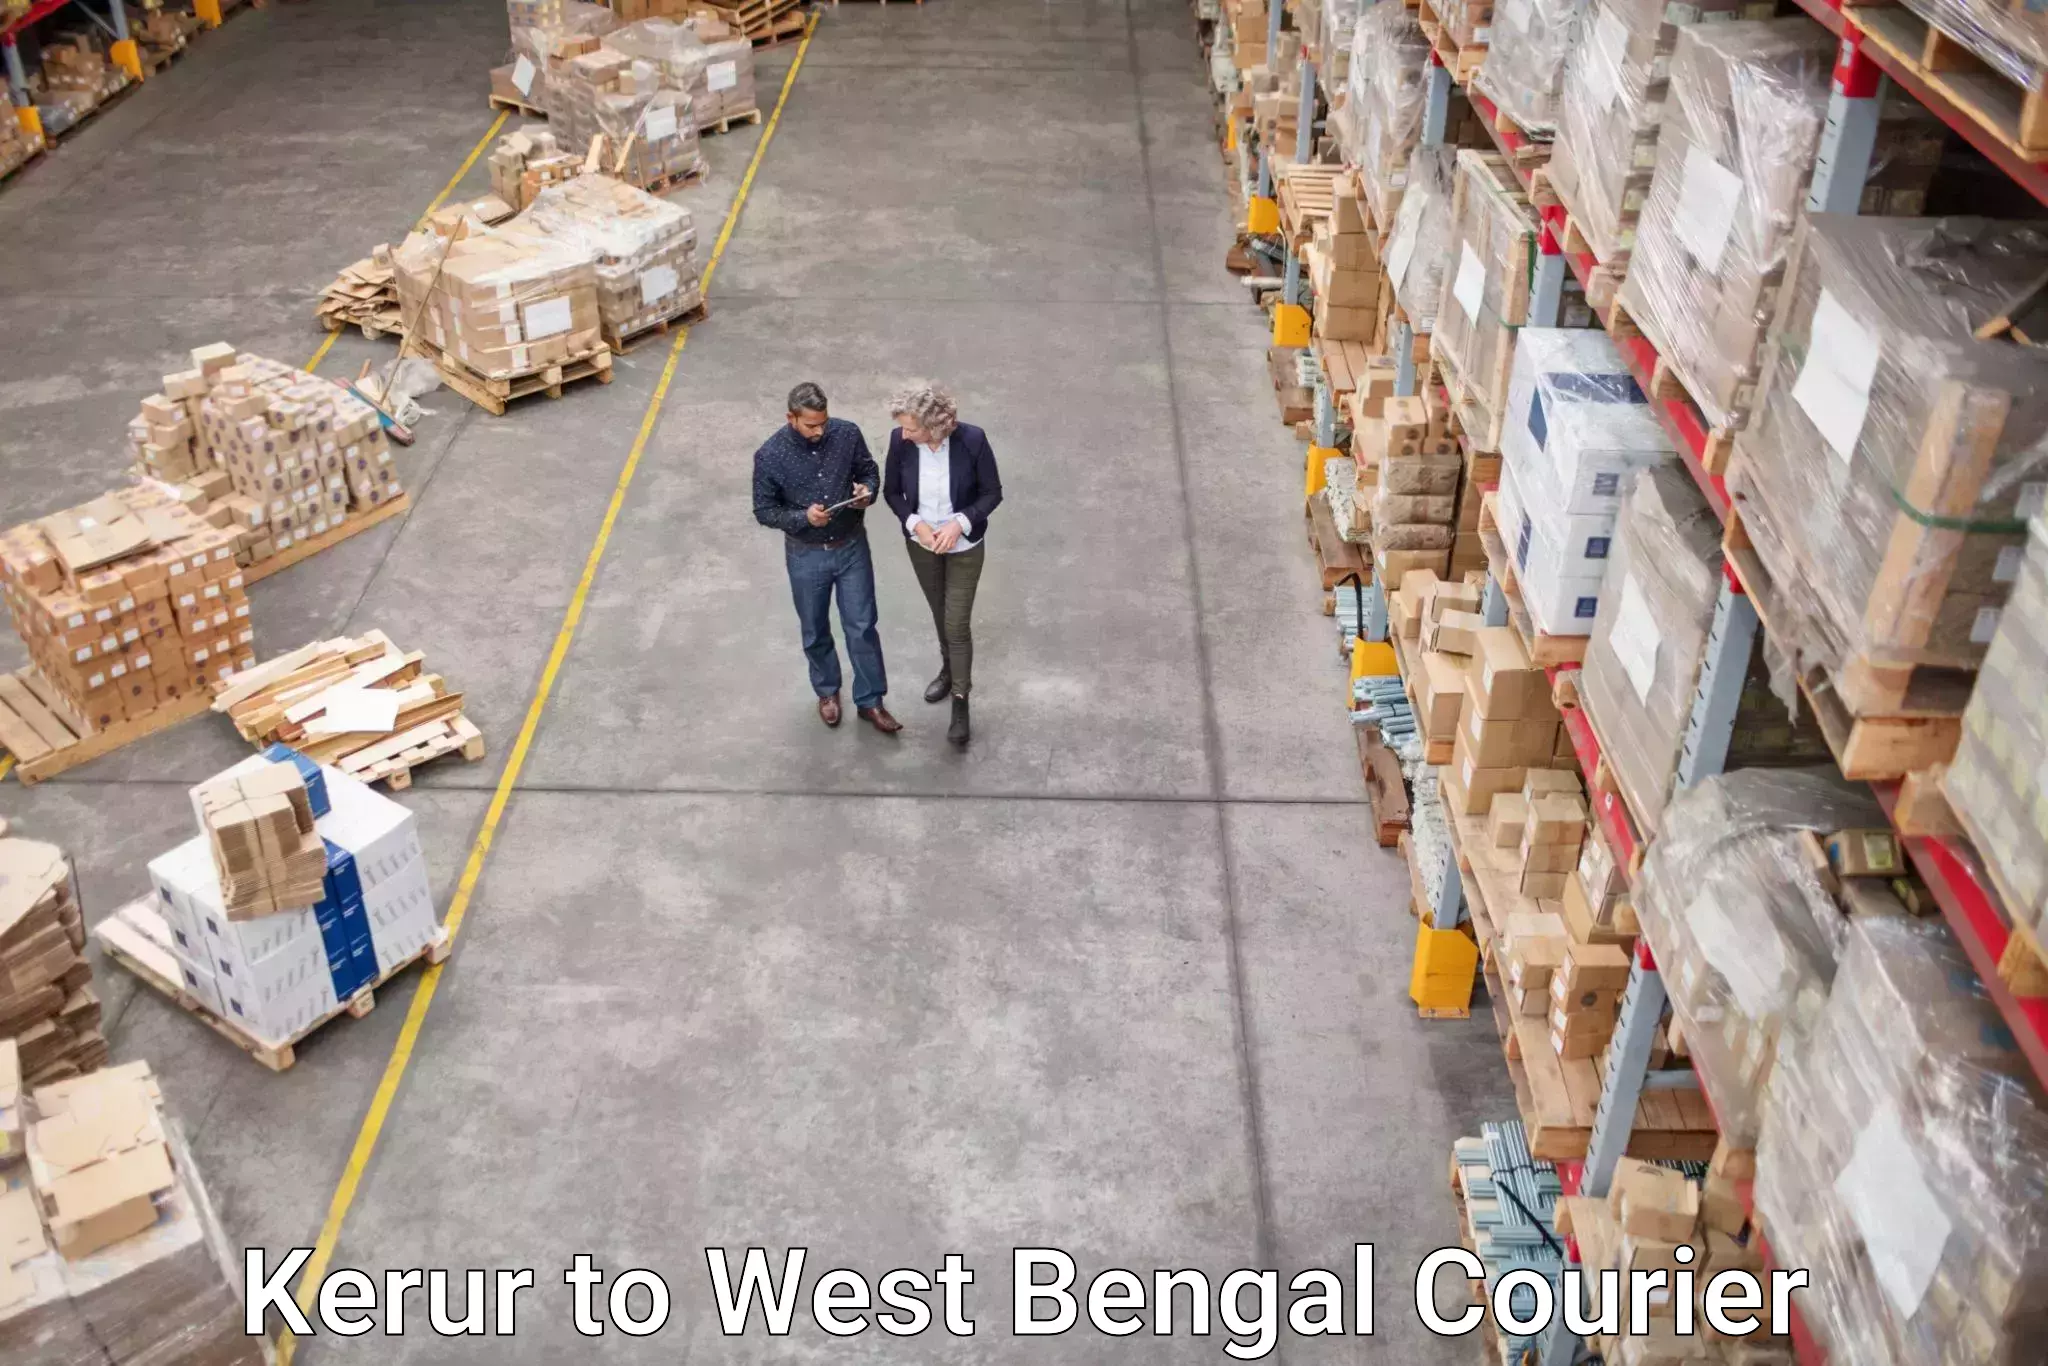 Reliable parcel services Kerur to West Bengal